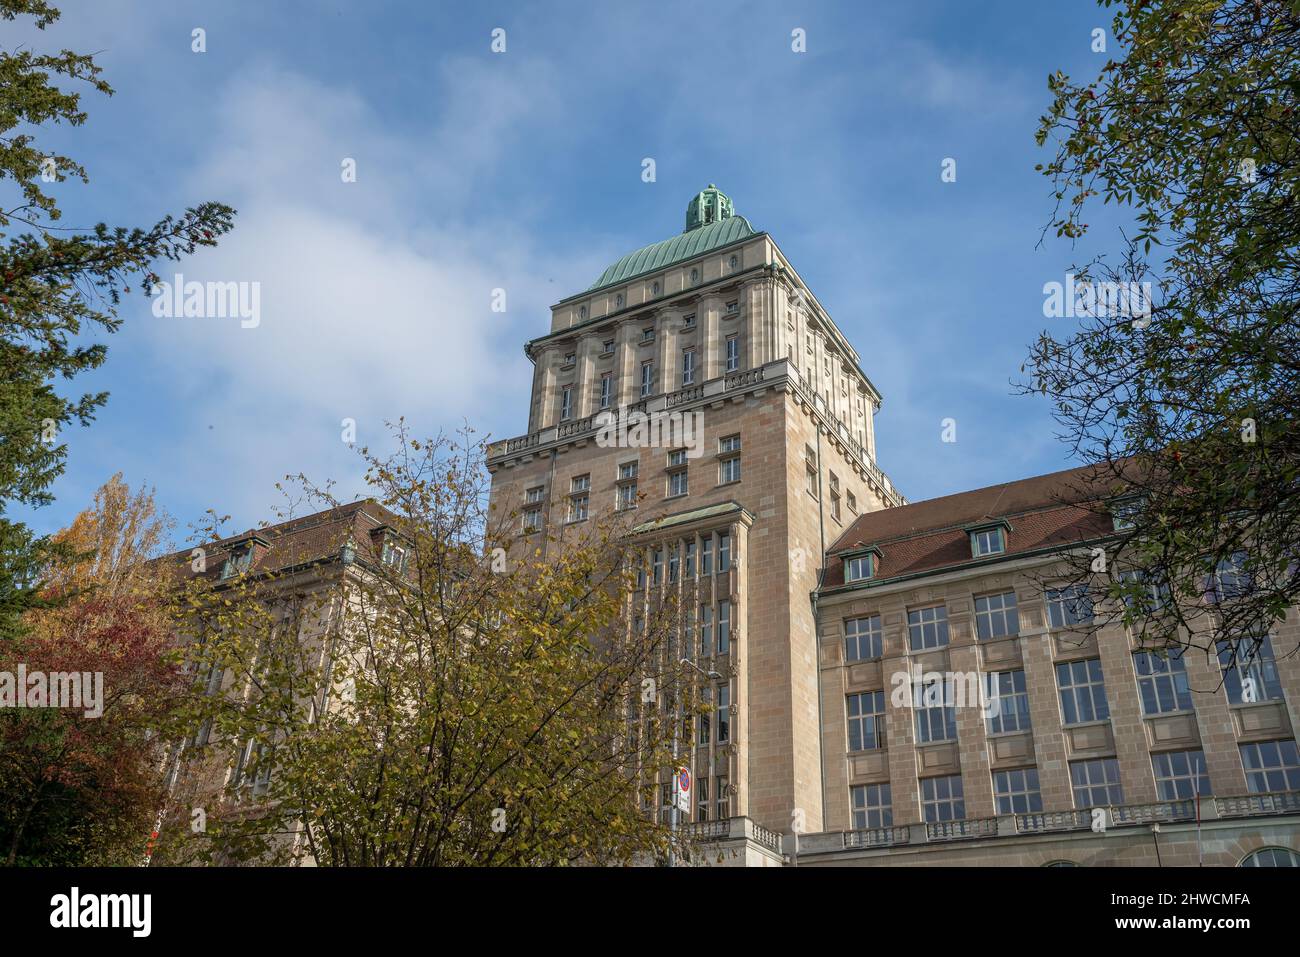 University of Zurich - Zurich, Switzerland Stock Photo